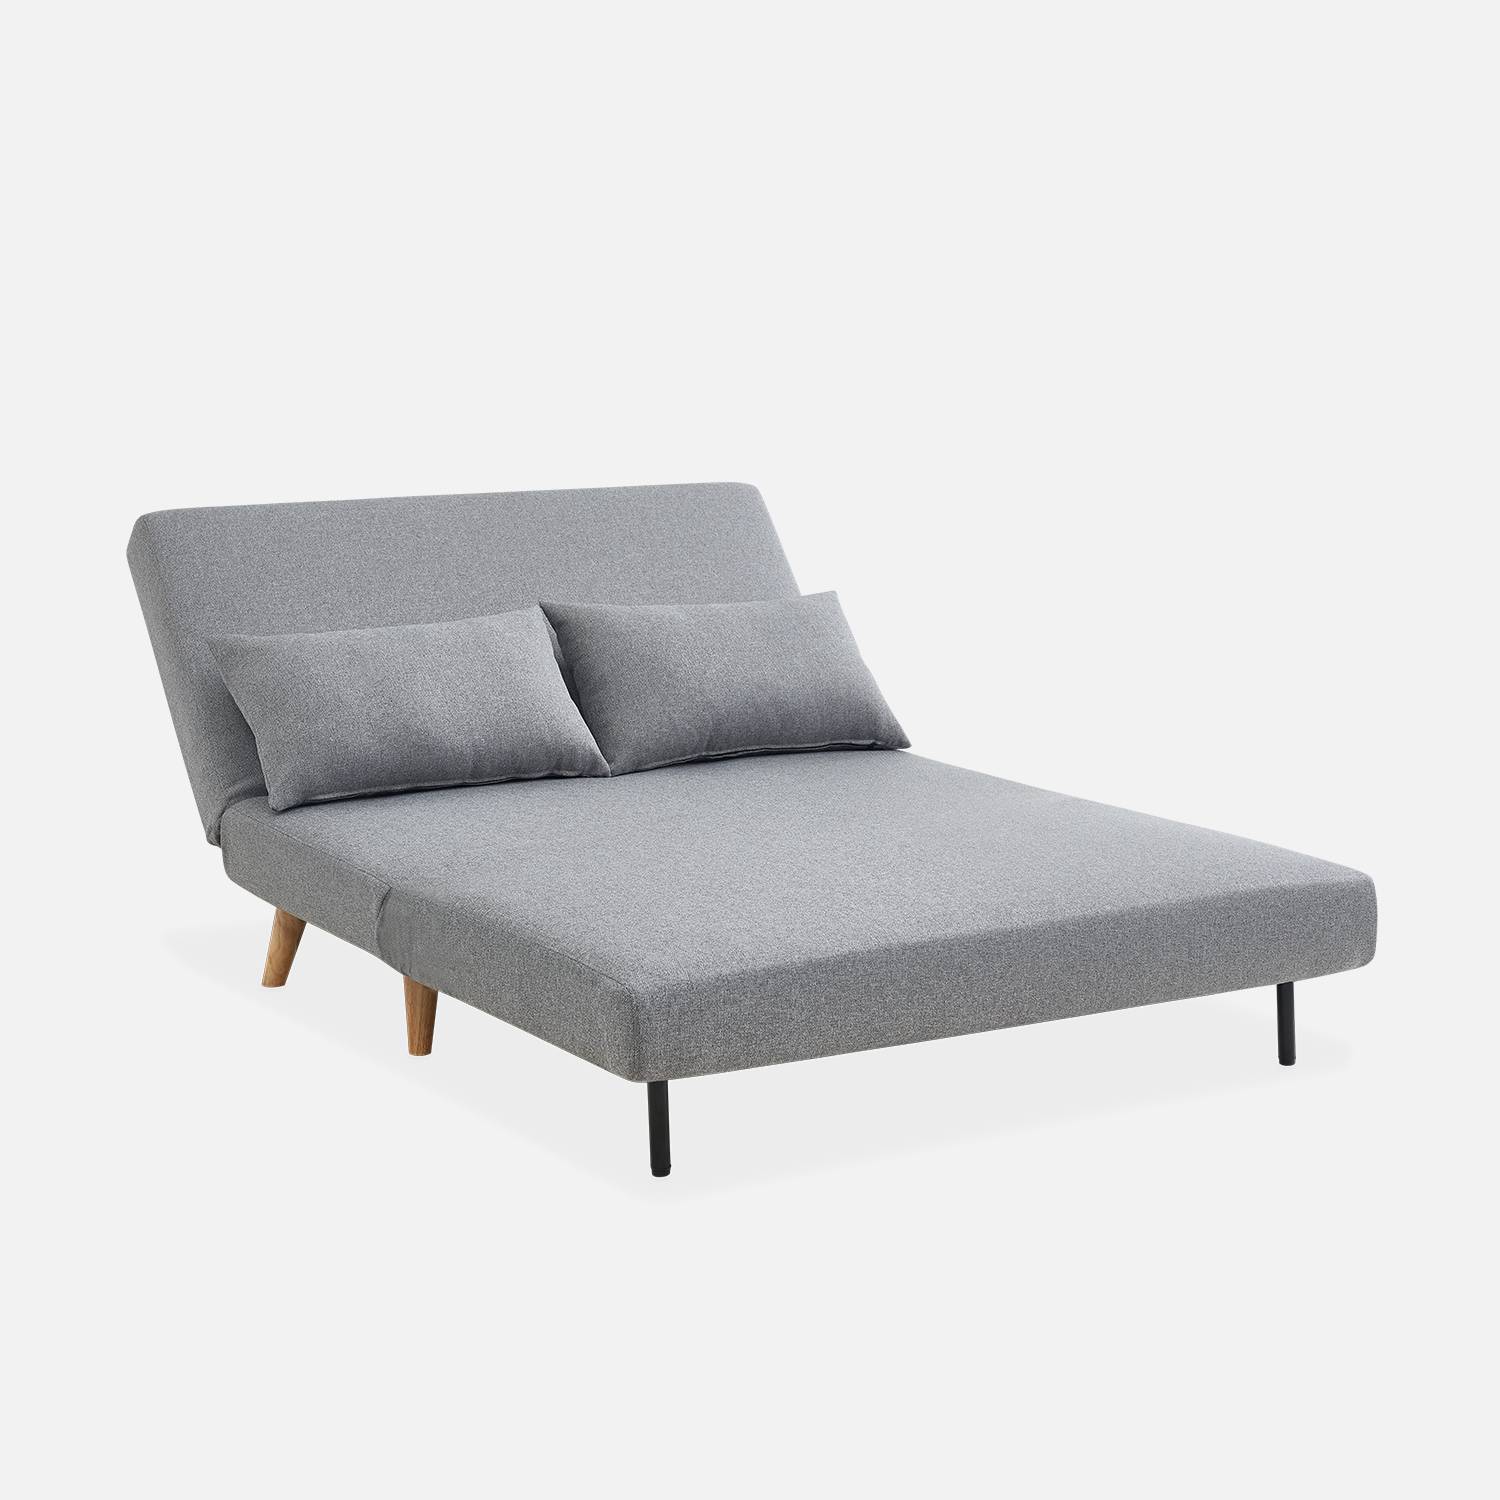 Sofá cama de tela - Guesta - Escandinavo de 2 plazas, patas de madera oscura, gris claro, asiento corrido, respaldo reclinable Photo6